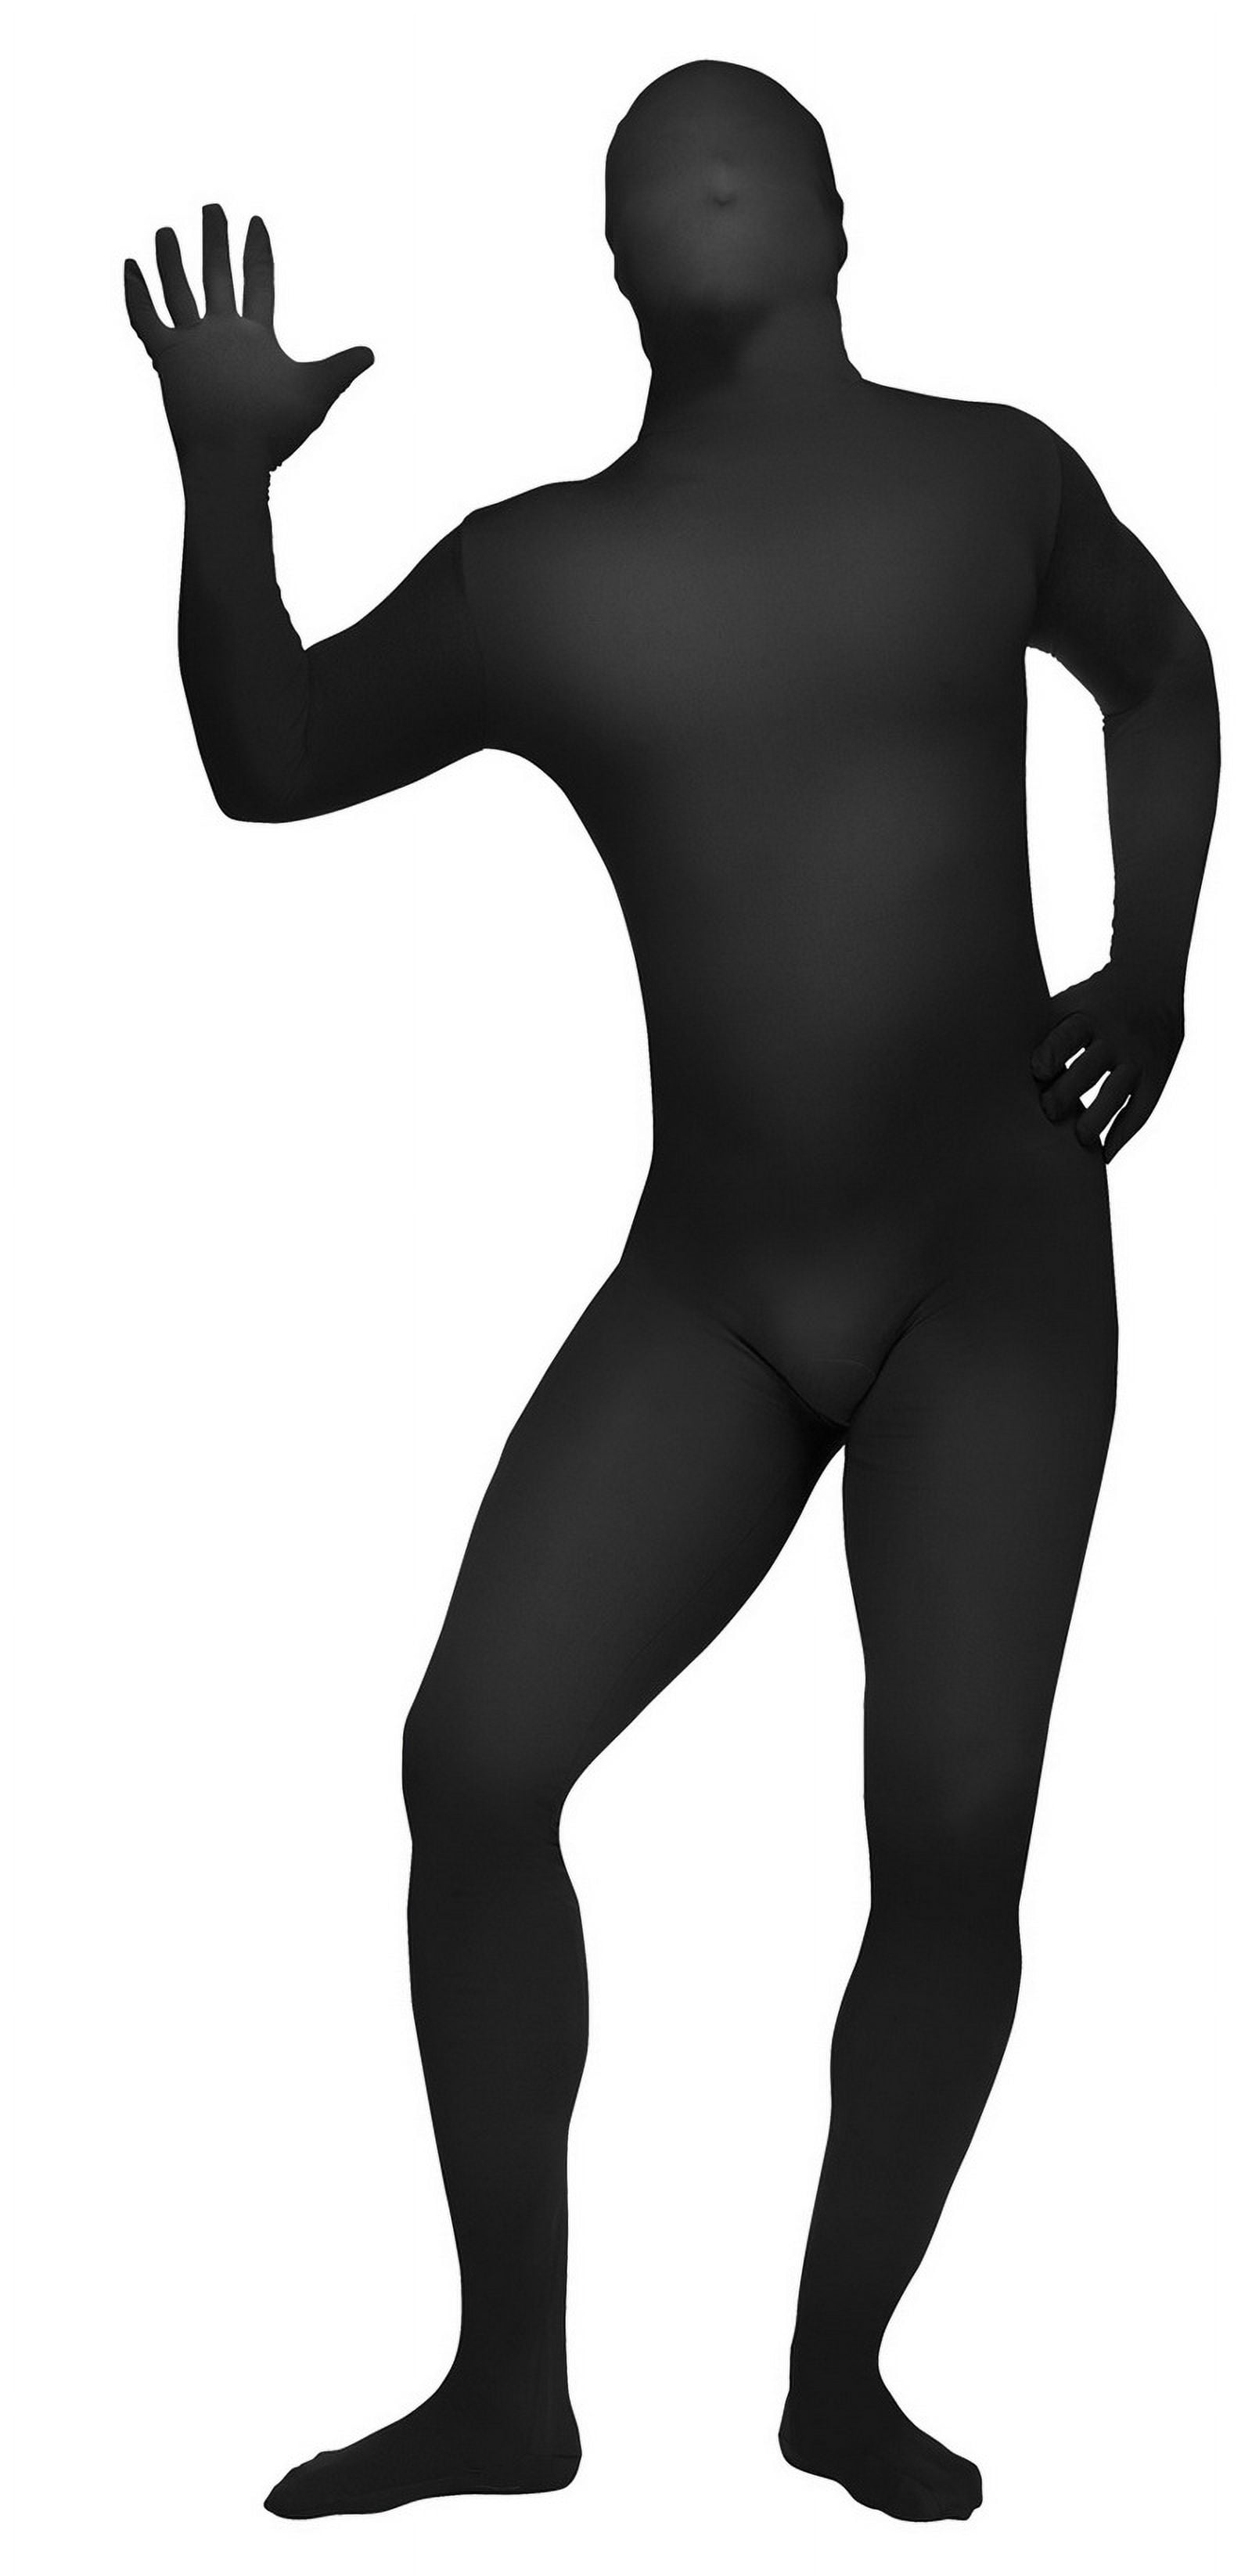 Black full bodysuit  Body suit outfits, Full body suit, Black full bodysuit